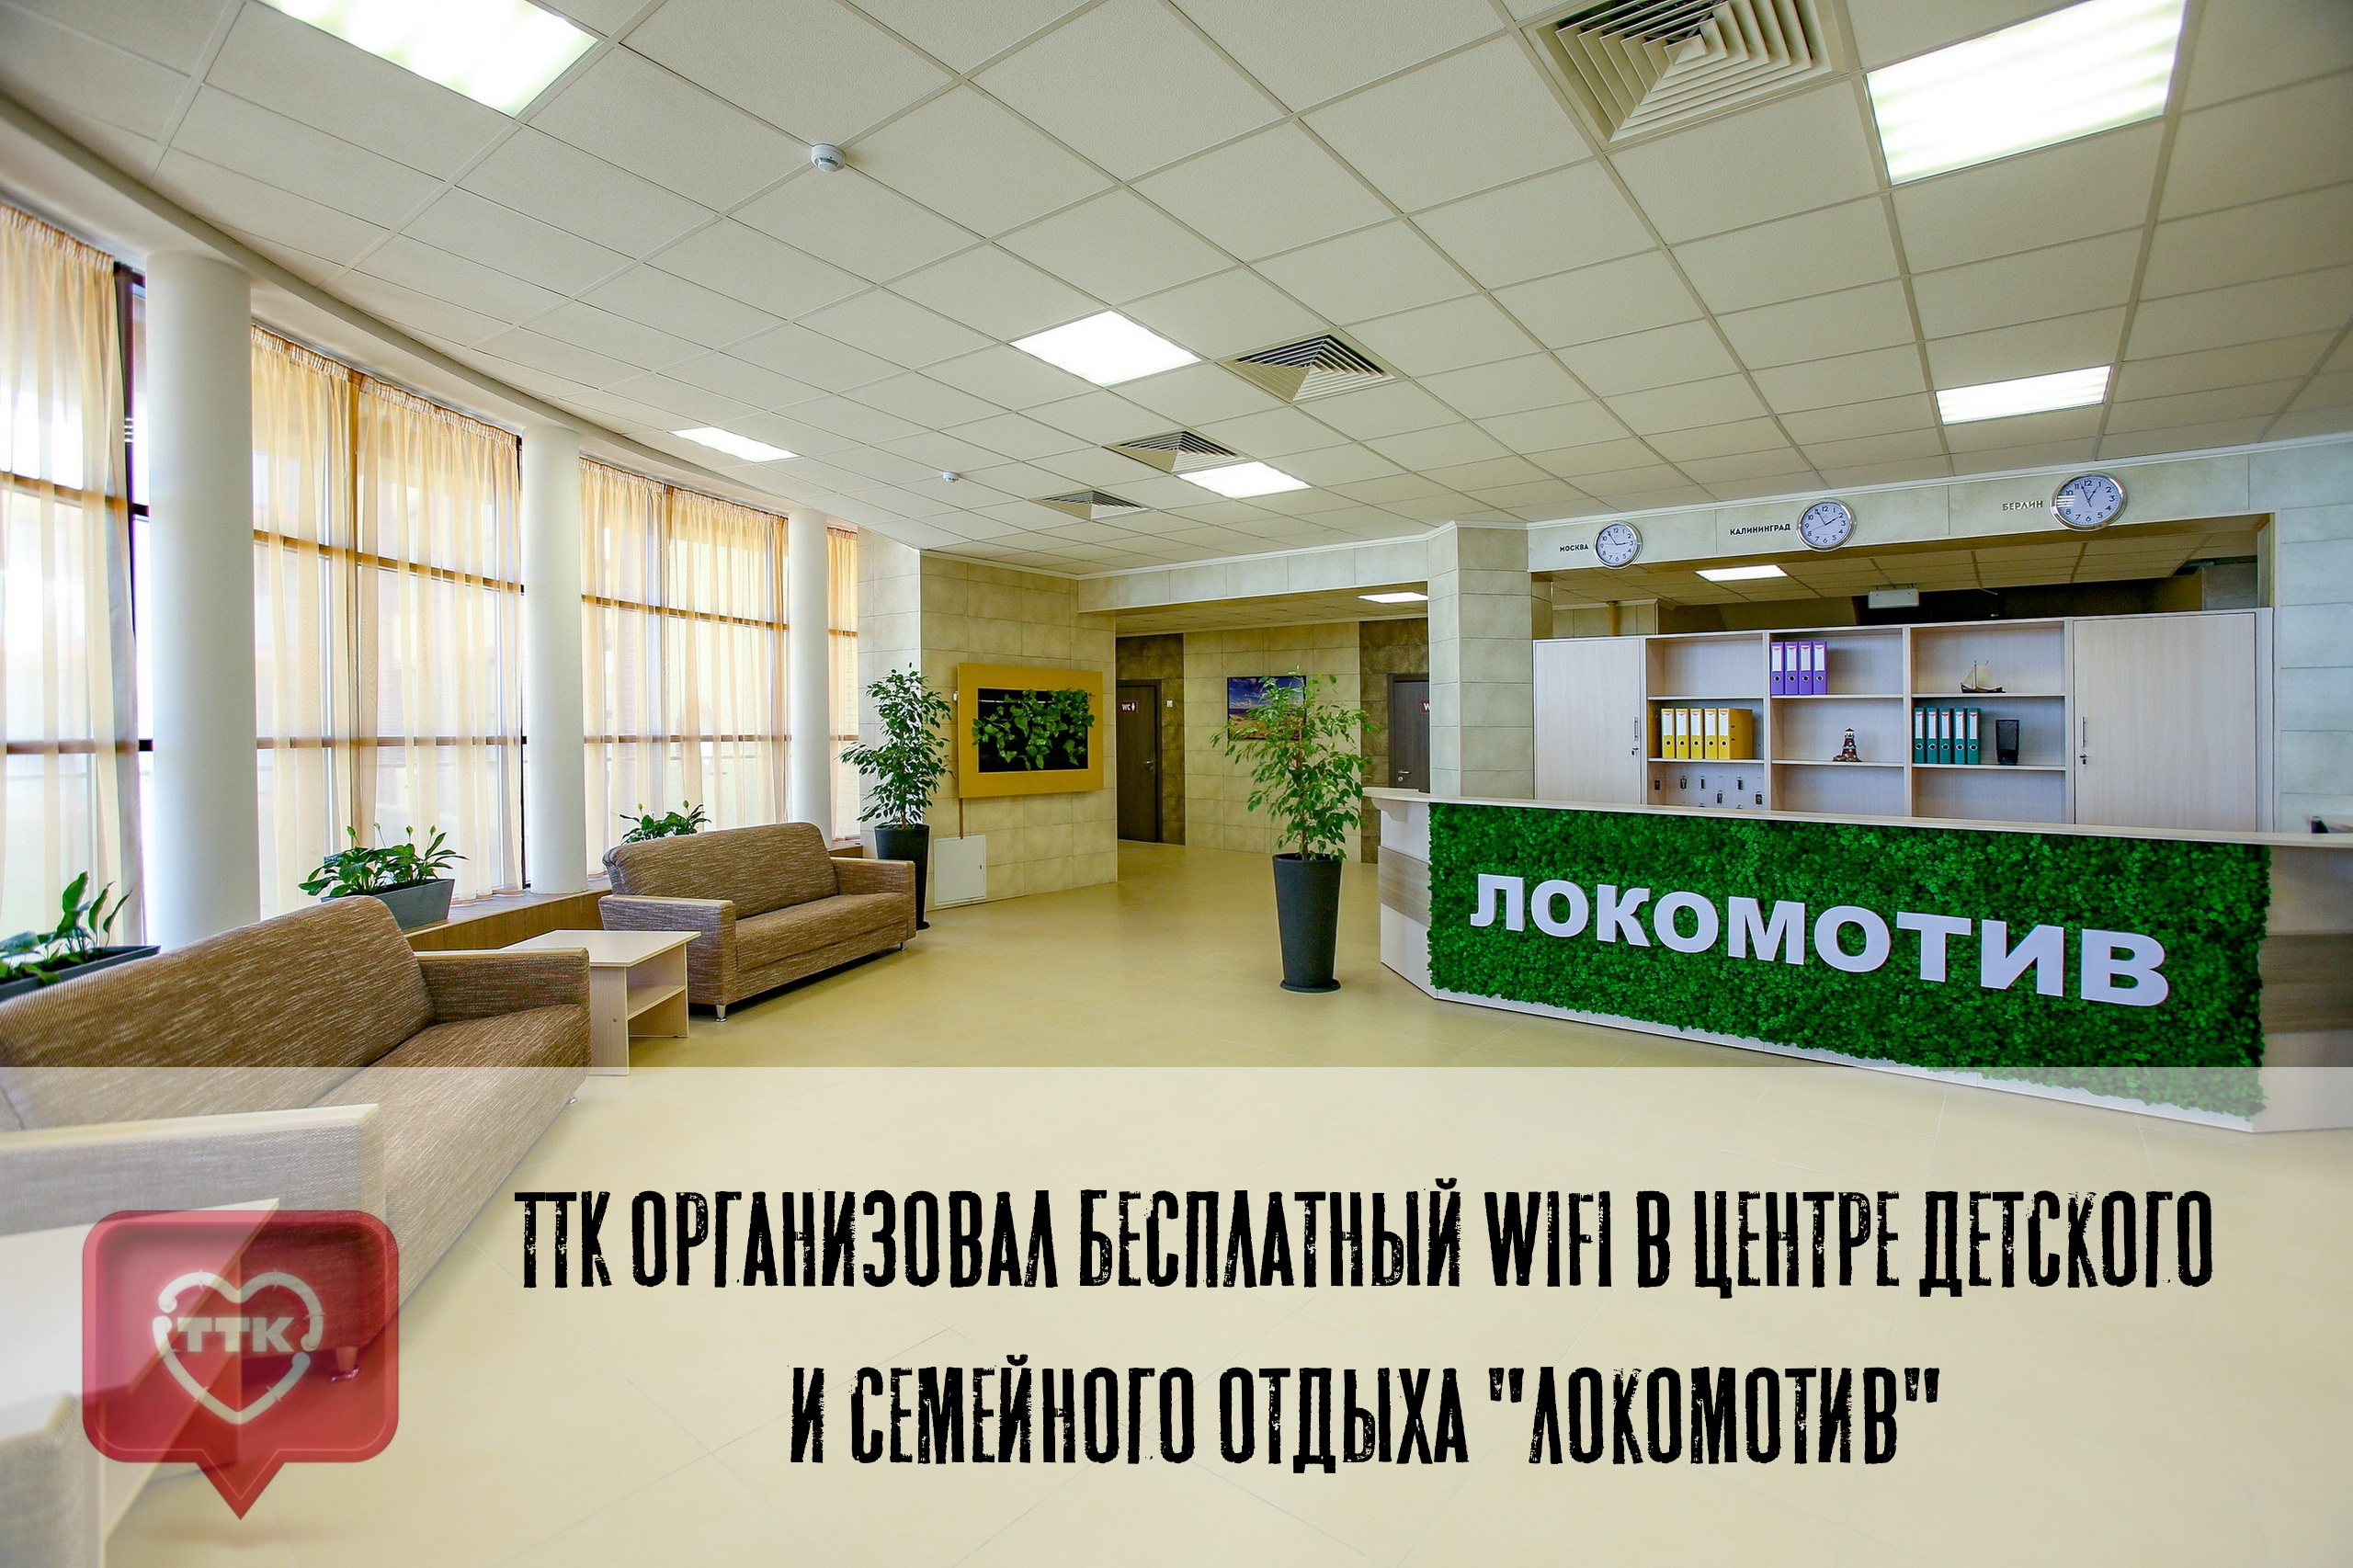 ТТК организовал бесплатный WiFi в центре детского и семейного отдыха "Локомотив" 1